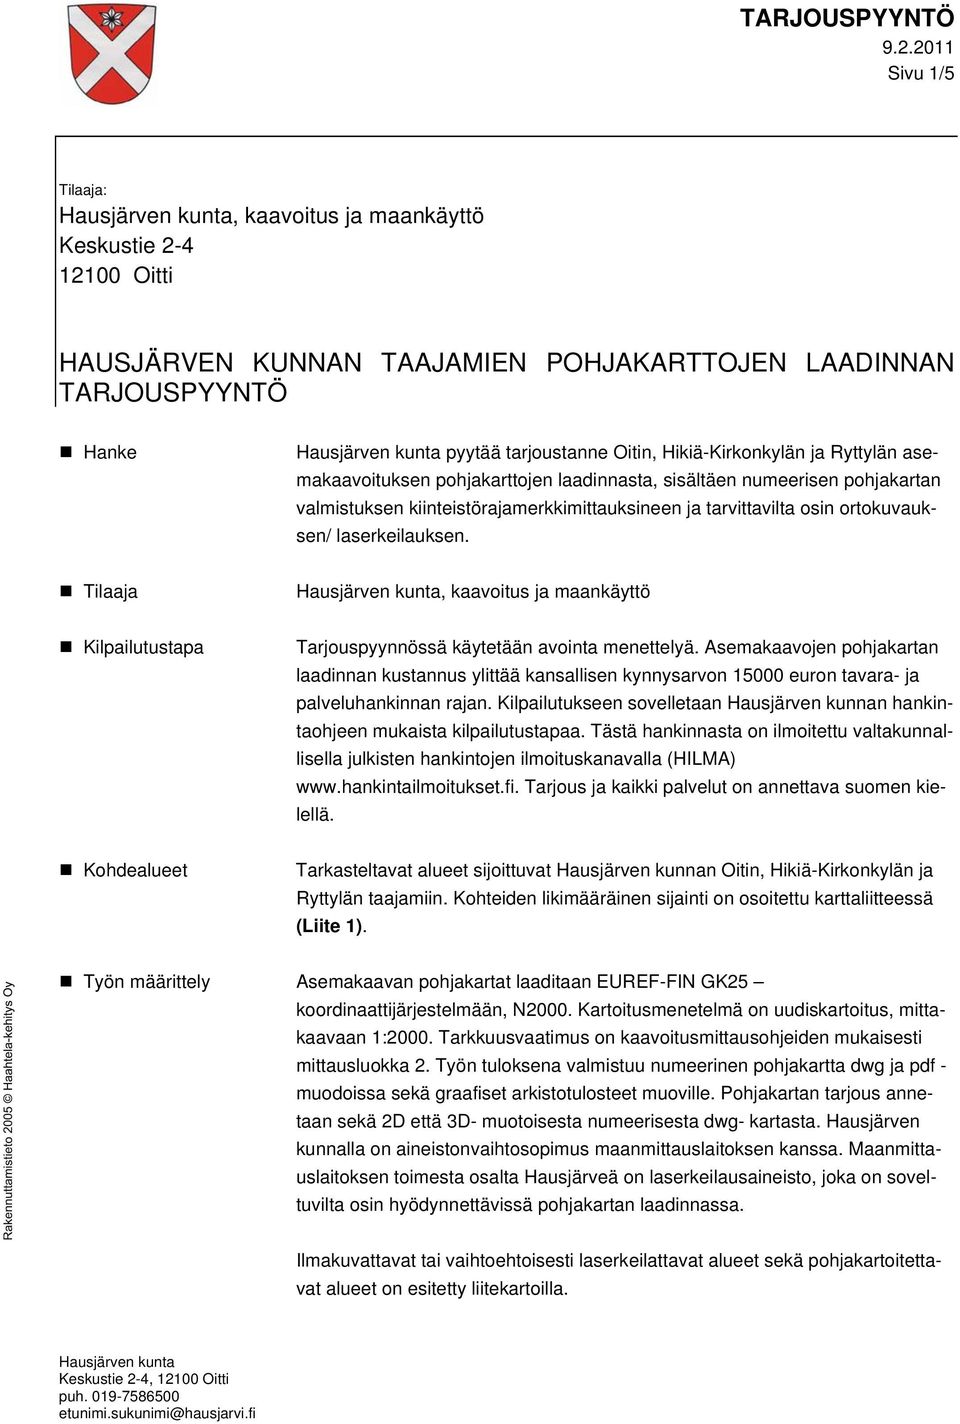 ortokuvauksen/ laserkeilauksen. Tilaaja Hausjärven kunta, kaavoitus ja maankäyttö Kilpailutustapa Tarjouspyynnössä käytetään avointa menettelyä.